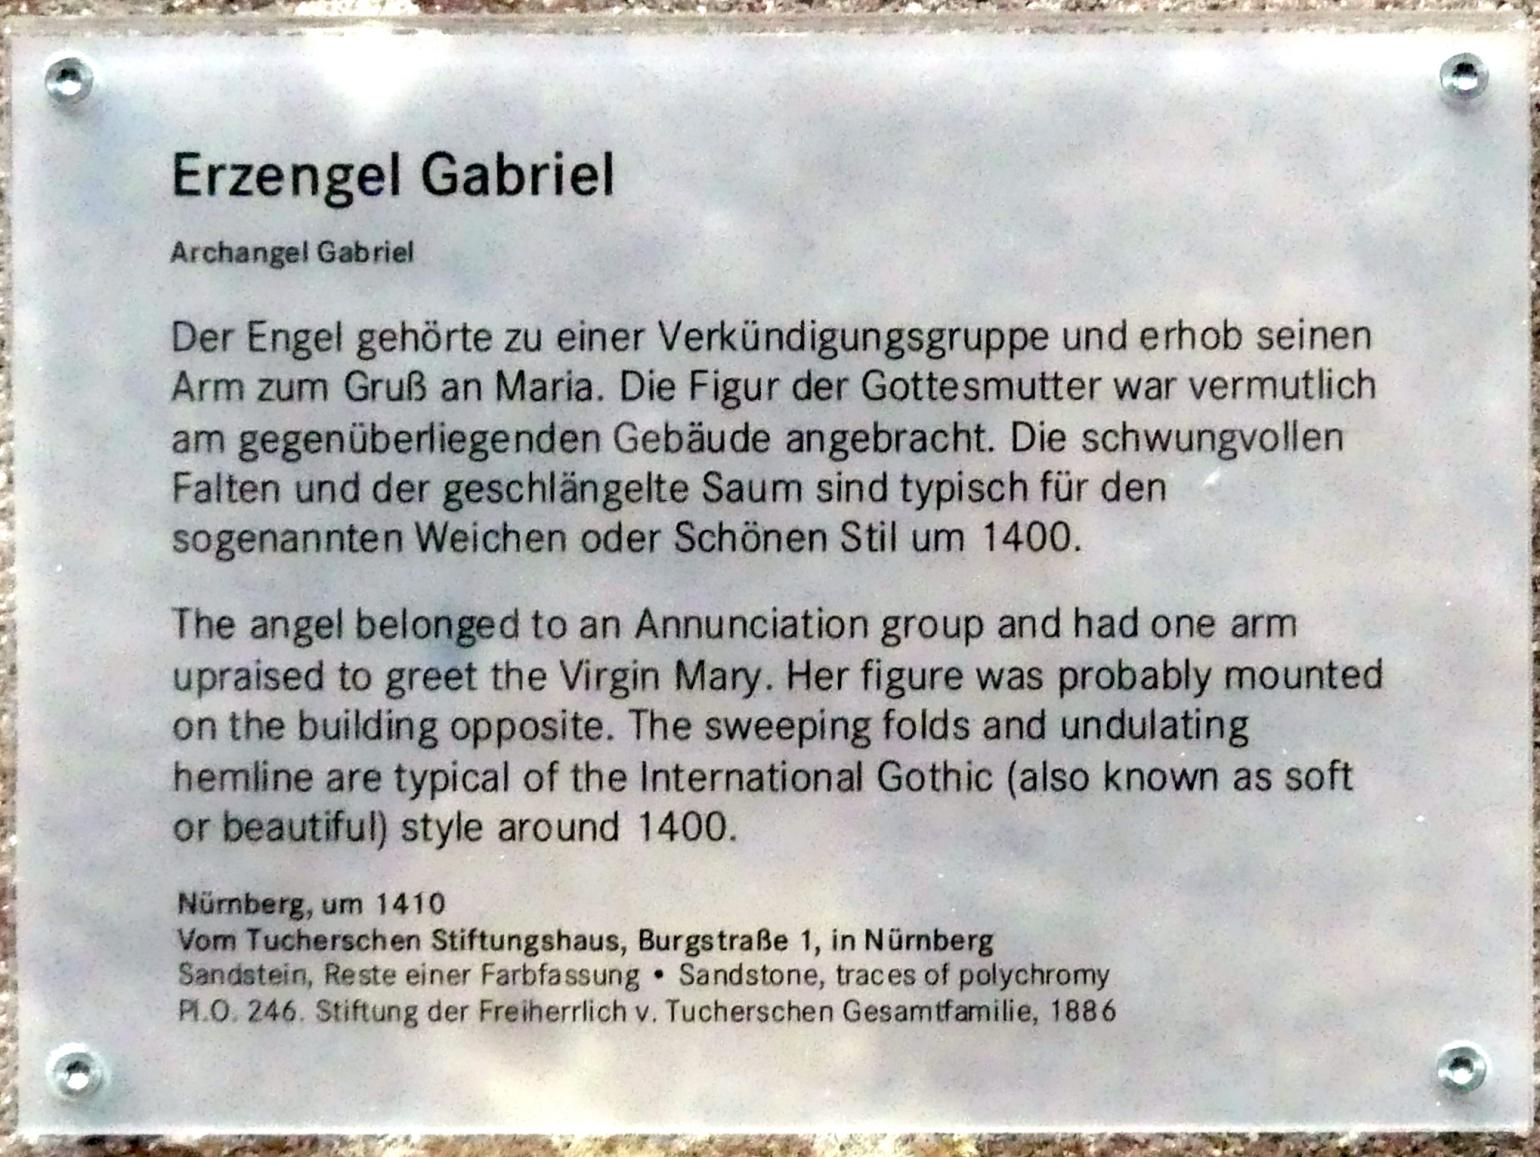 Erzengel Gabriel, Nürnberg, Tuchersches Stiftungshaus, Burgstraße 1, jetzt Nürnberg, Germanisches Nationalmuseum, Saal 32, um 1410, Bild 3/3